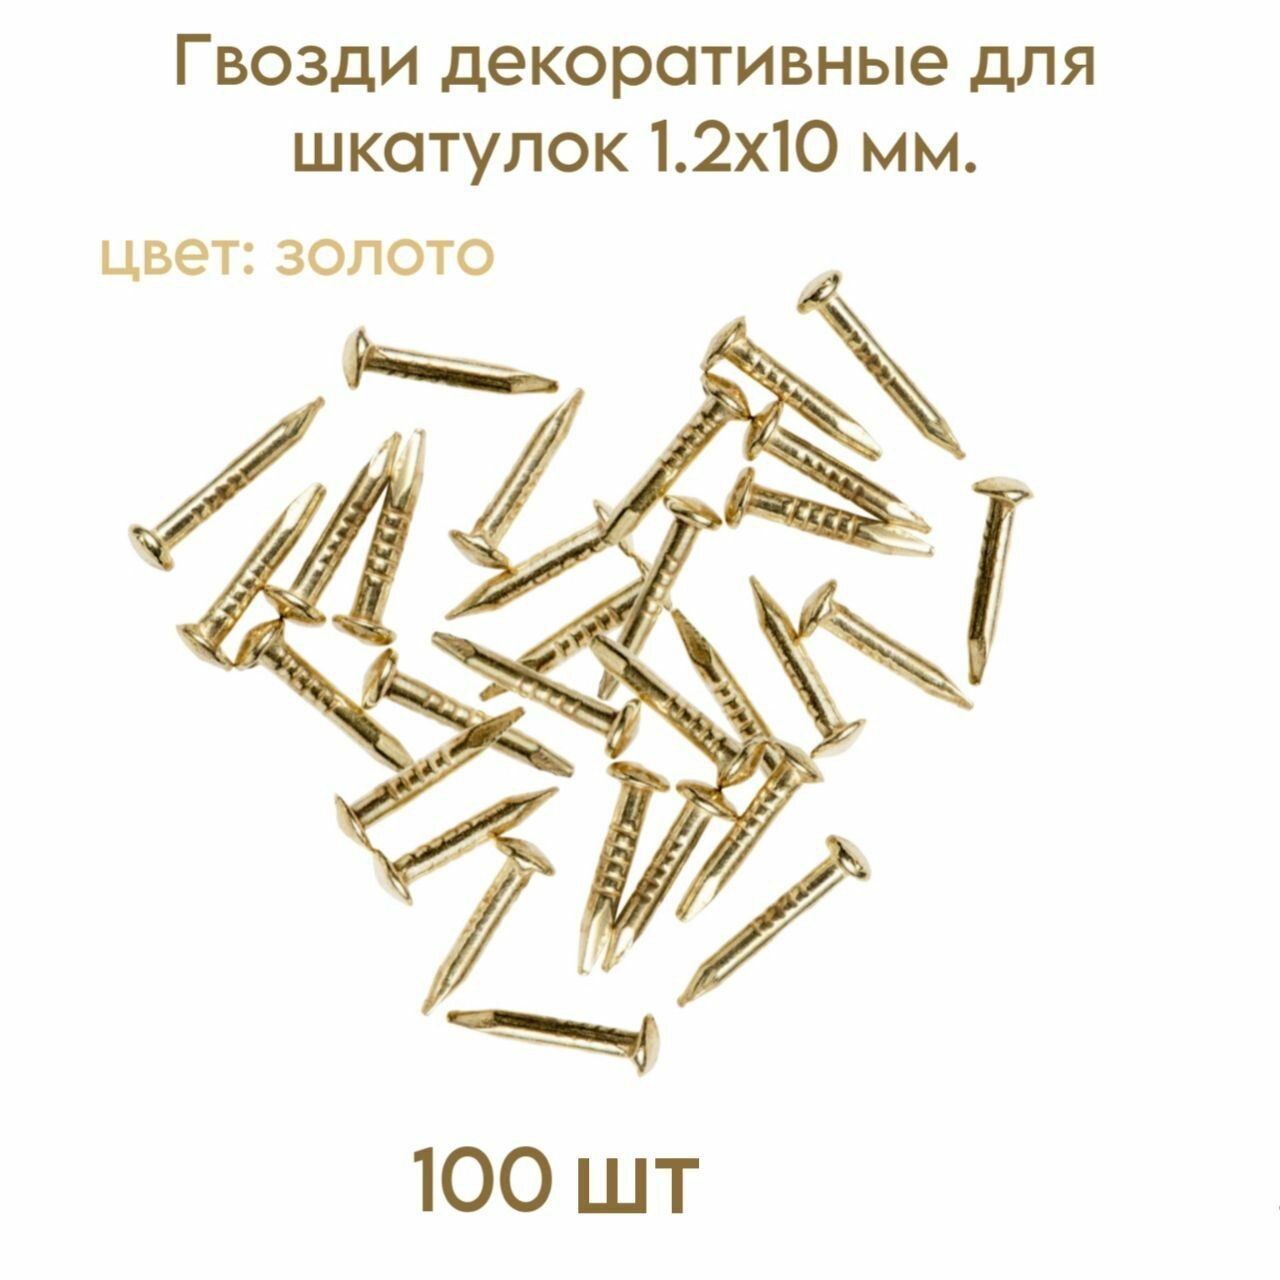 Гвозди декоративные для шкатулок, цвет золото, 1.2х10 мм. (100 шт.)